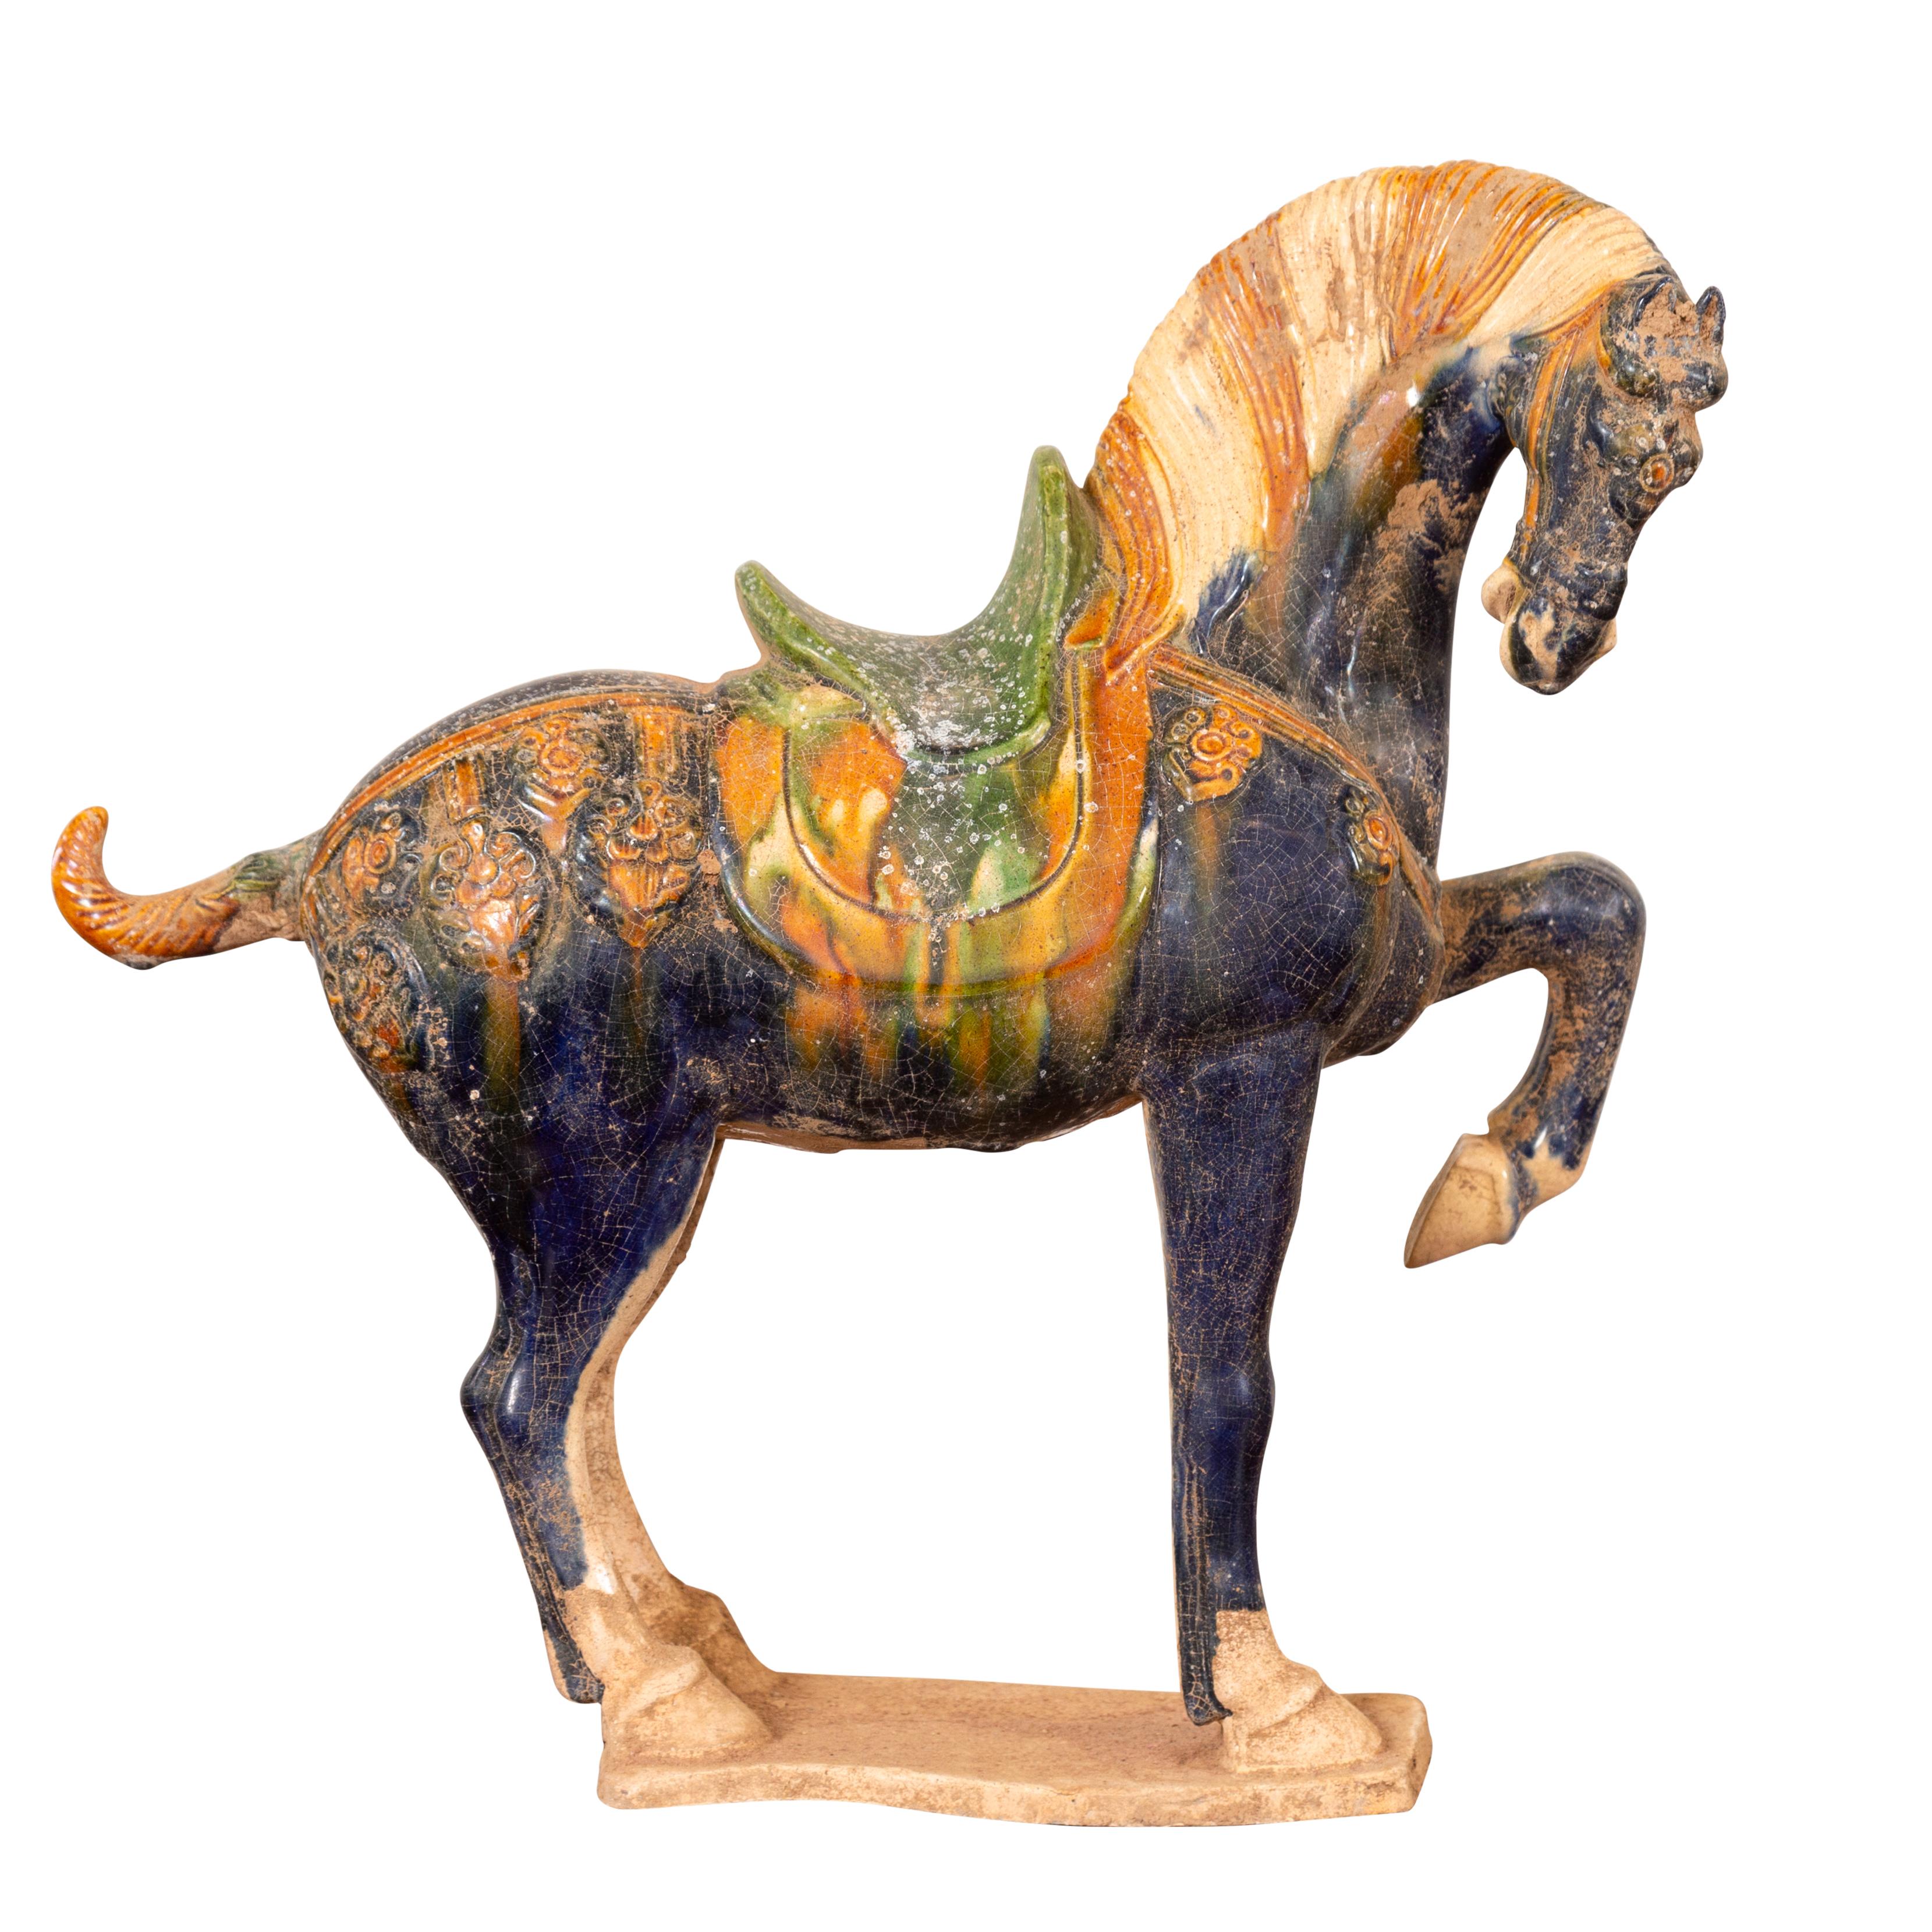 Eine glasierte Terrakotta-Pferdefigur im Stil der chinesischen Ming-Dynastie aus dem 20. Jahrhundert mit polychromer Oberfläche. Dieses kleine, im Ming-Stil gefertigte Terrakotta-Pferd zieht mit seiner anmutigen Haltung und der dreifarbigen Glasur